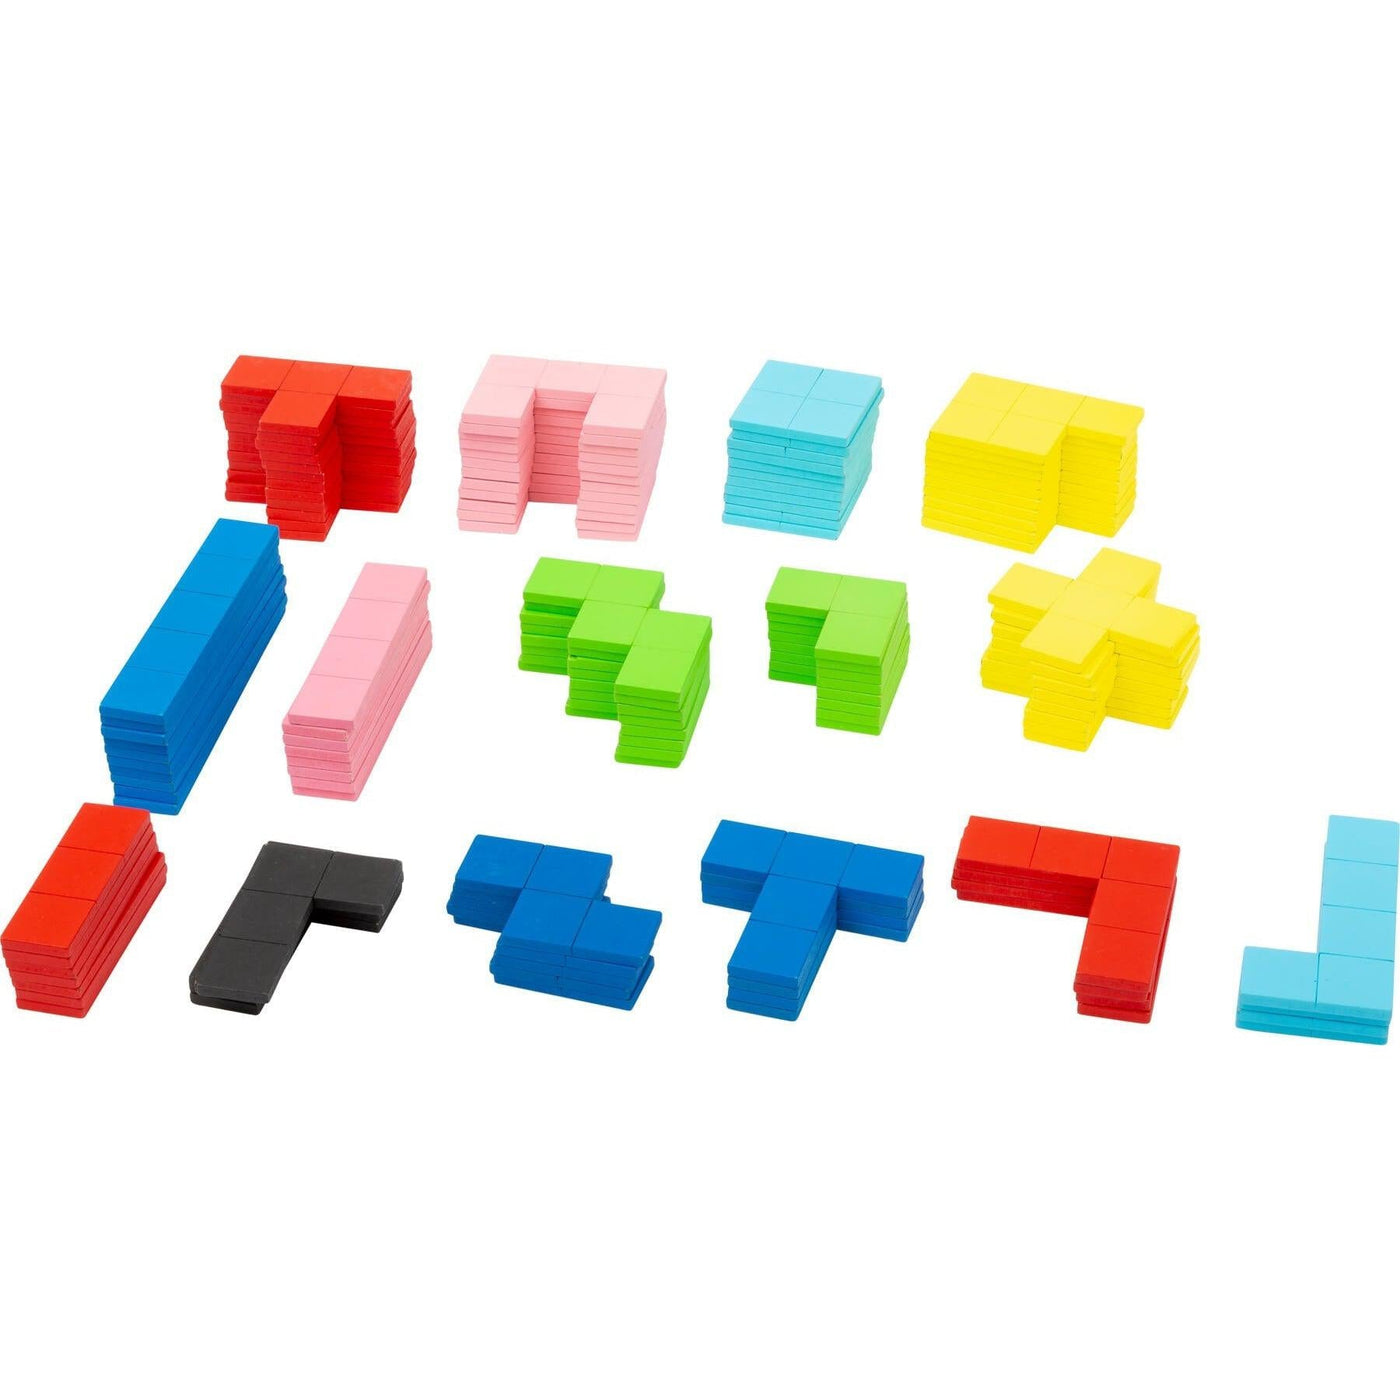 Tetris Wooden Puzzle